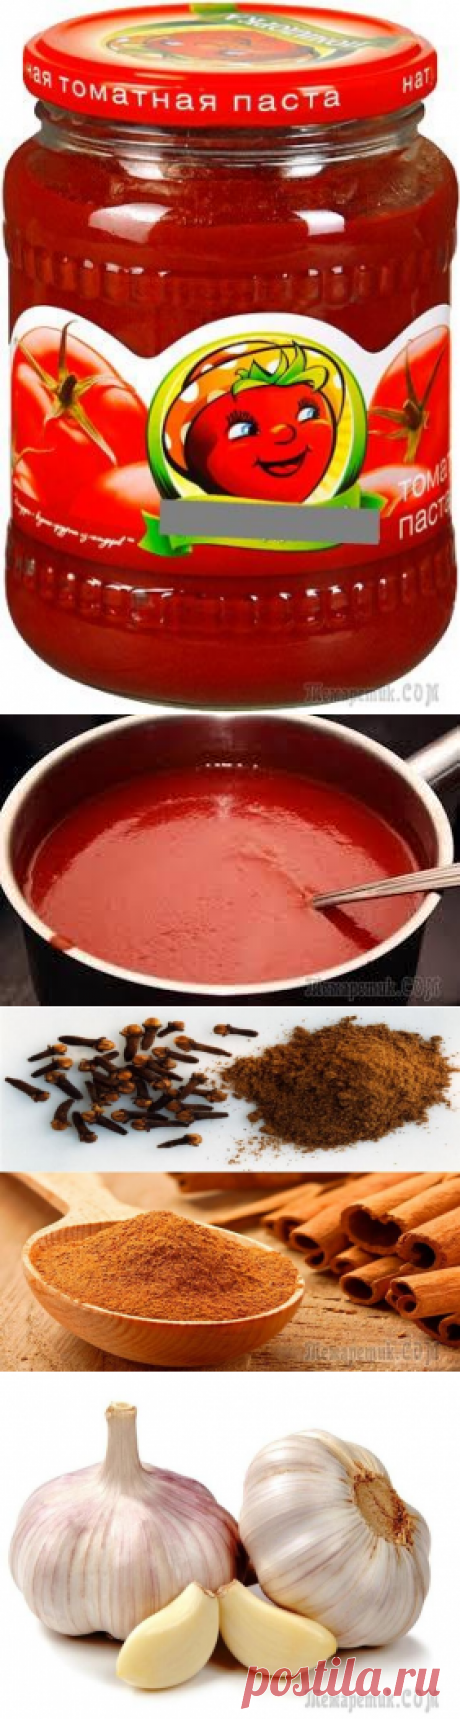 Простой рецепт классического кетчупа из томат-пасты в домашних условиях